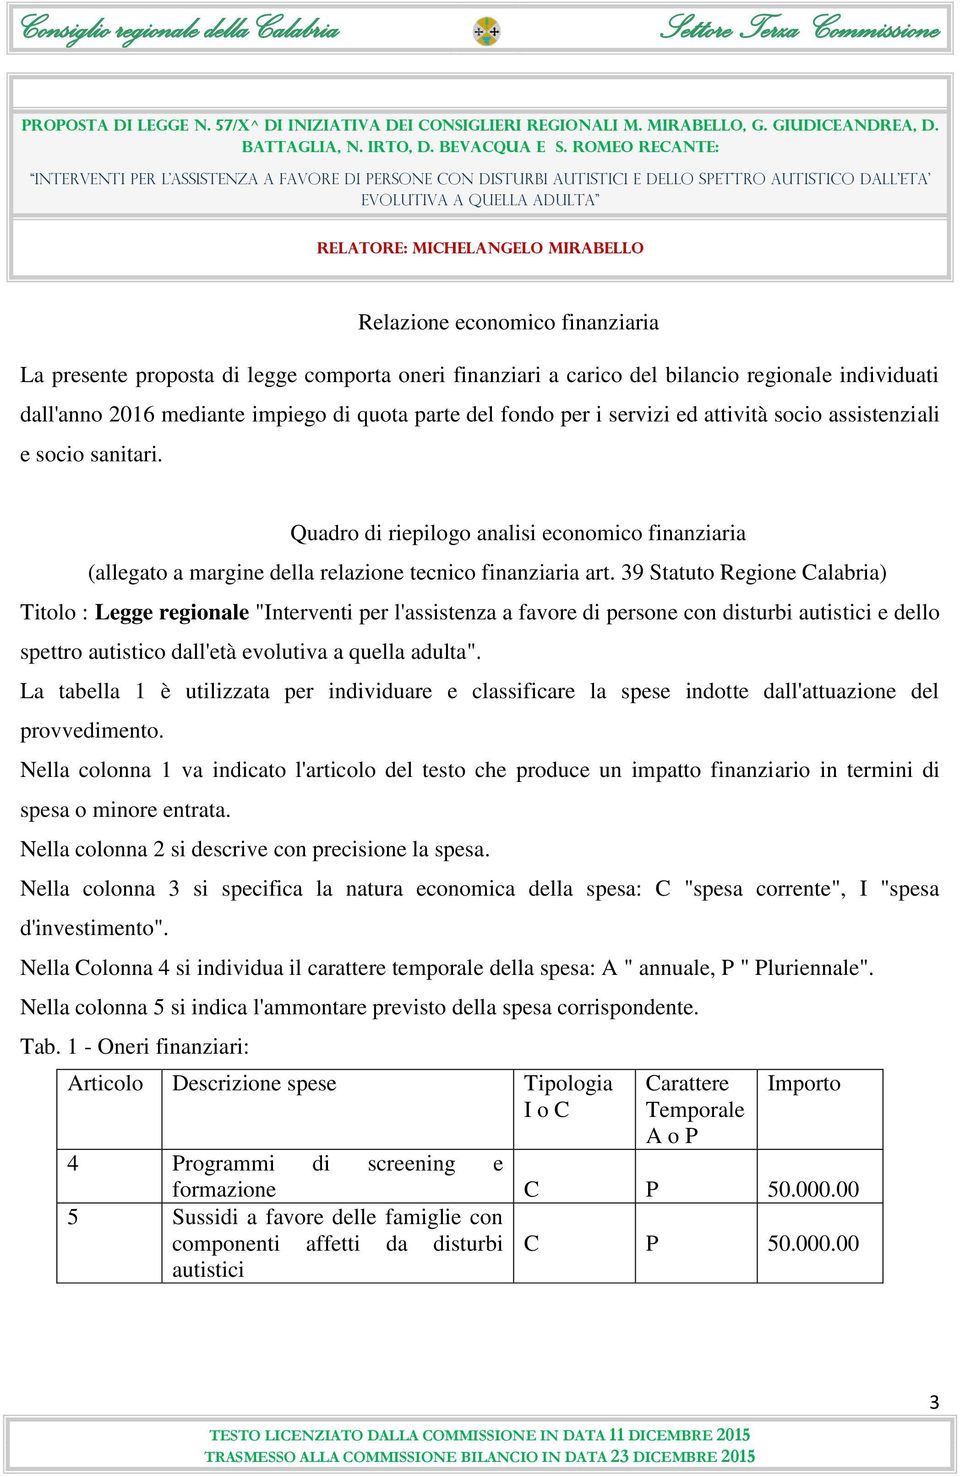 39 Statuto Regione Calabria) Titolo : Legge regionale "Interventi per l'assistenza a favore di persone con disturbi autistici e dello spettro autistico dall'età evolutiva a quella adulta".